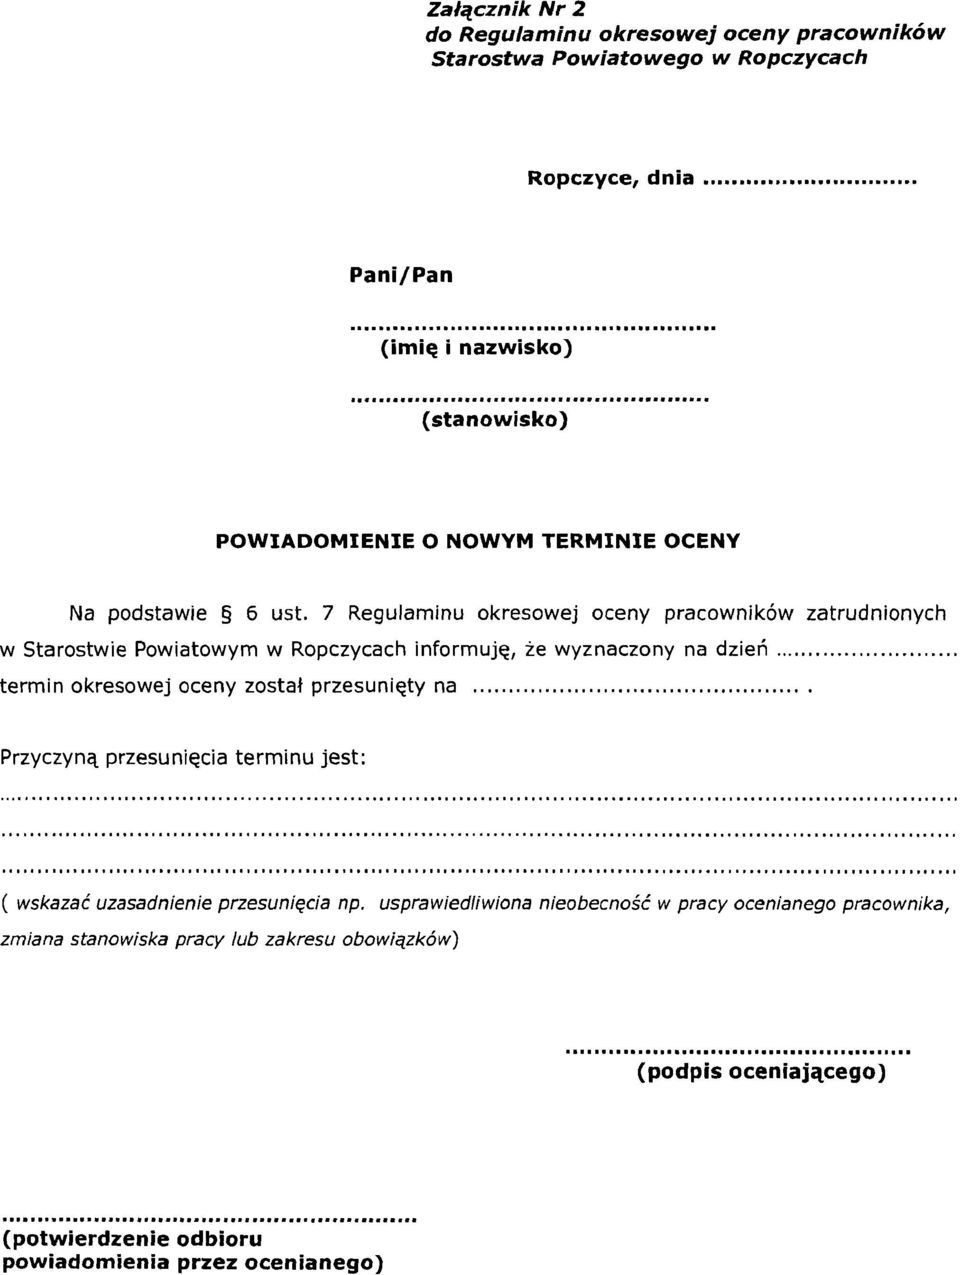 7 Regulaminu okresowej oceny pracownik6w zatrudnionych w Starostwie Powiatowym w Ropczycach inforrnujq, ie wyznaczony na dzieri.